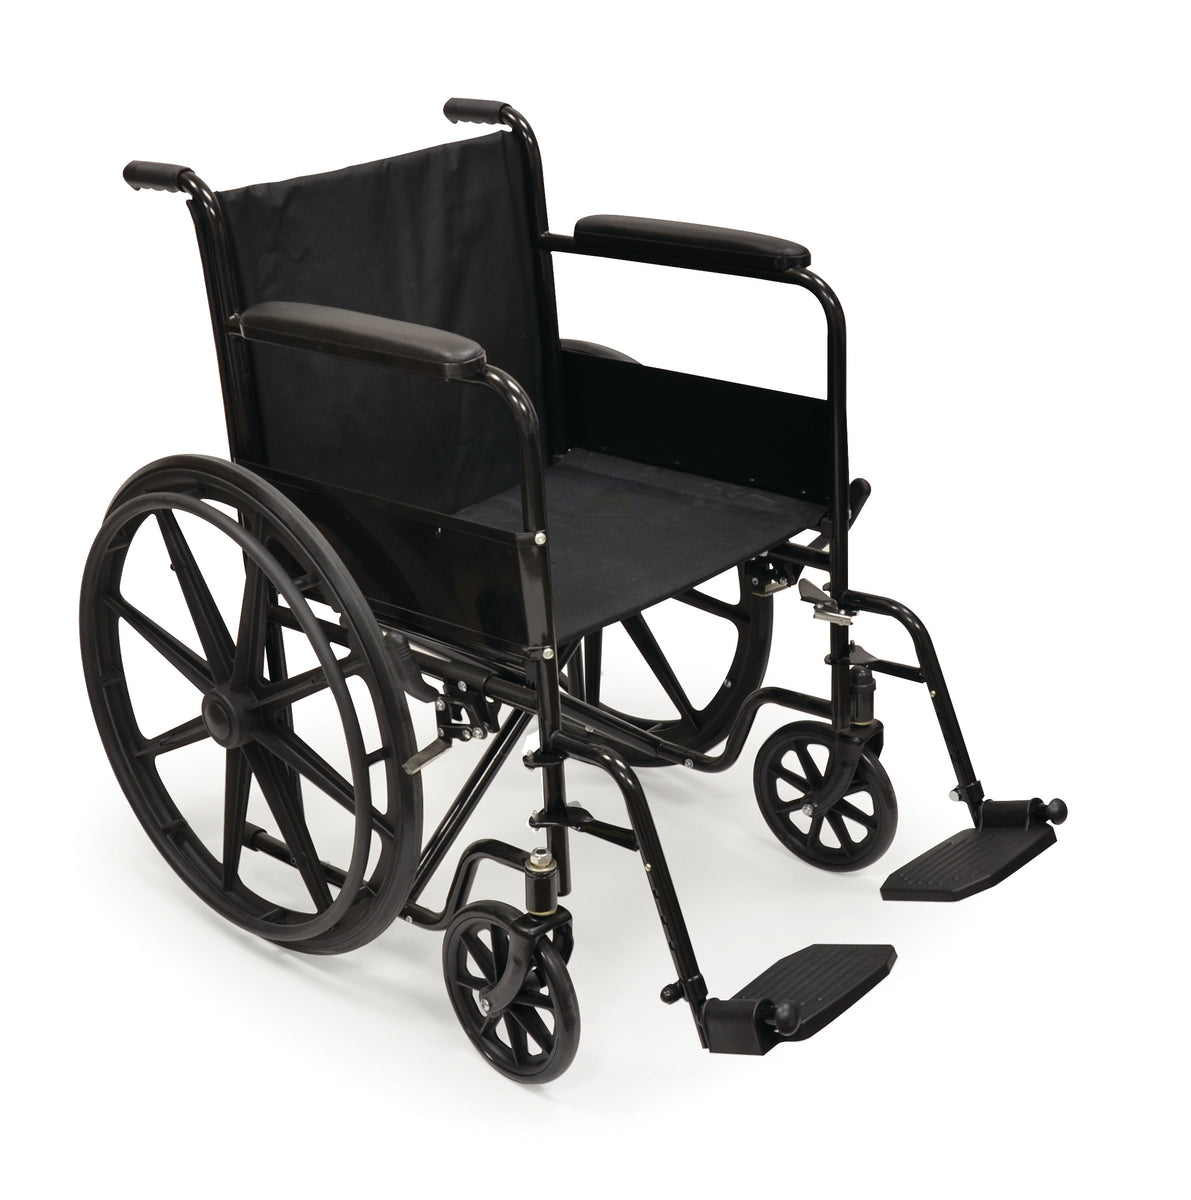 18” / 45.5 CM Wheelchair – BIOS Medical